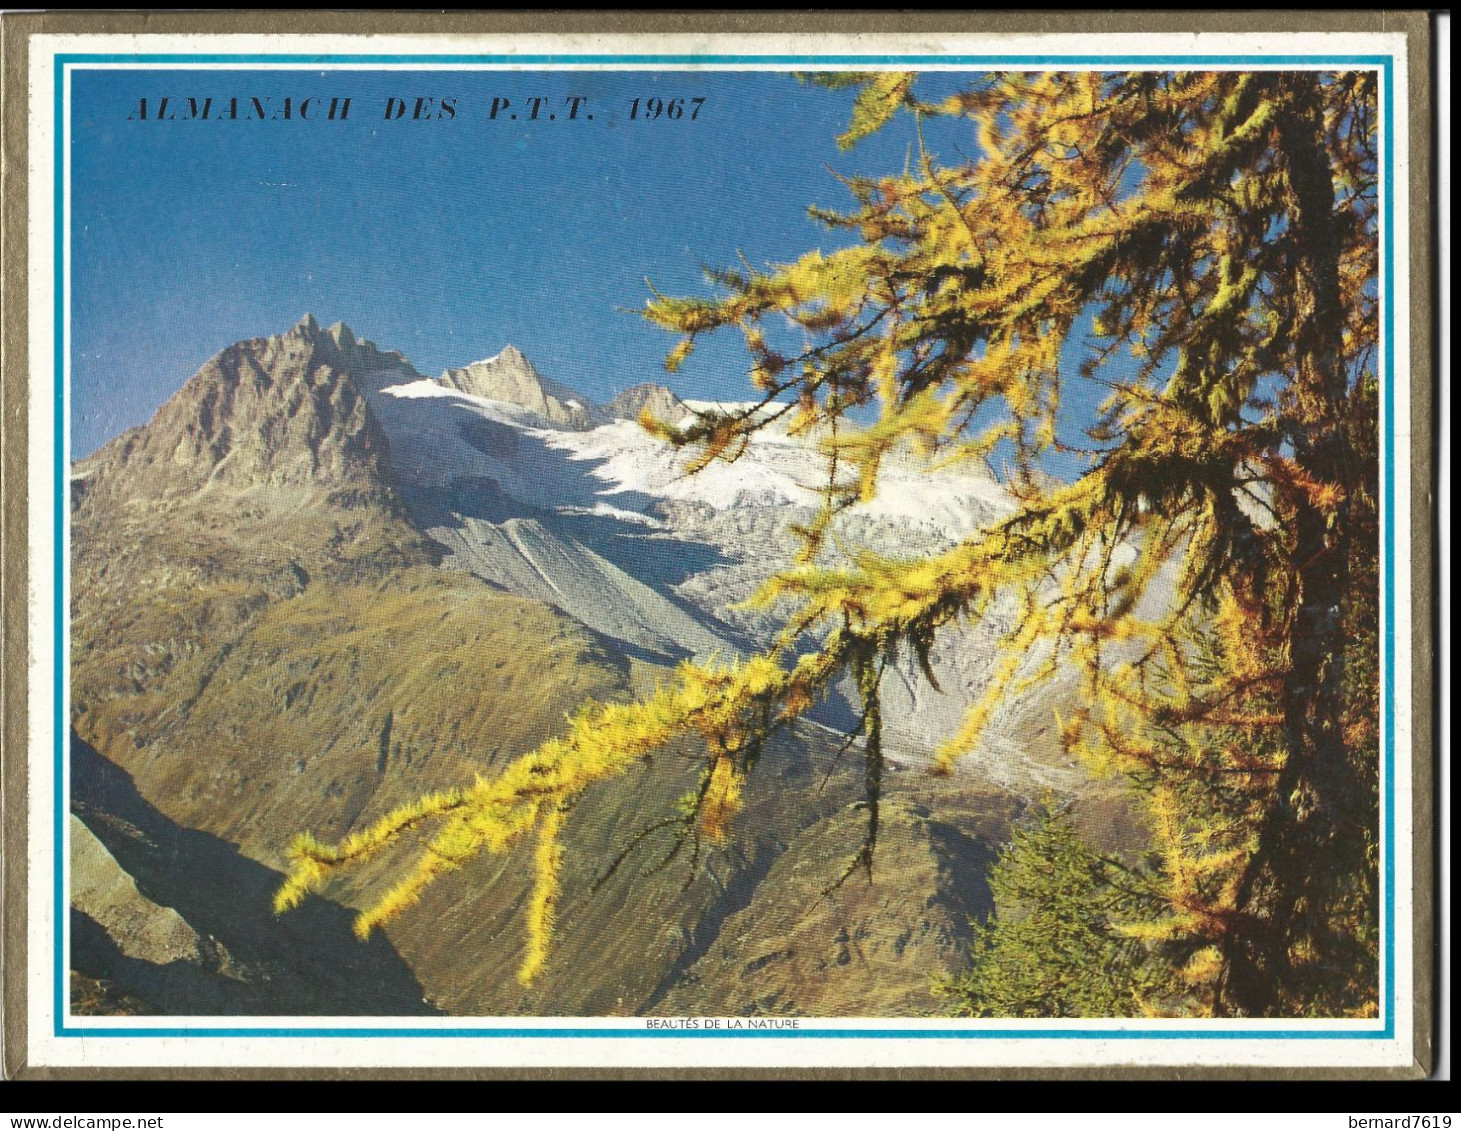 Almanach  Calendrier  P.T.T  -  La Poste -  1967 - Etretat - Beaute De La Nature - Groot Formaat: 1961-70